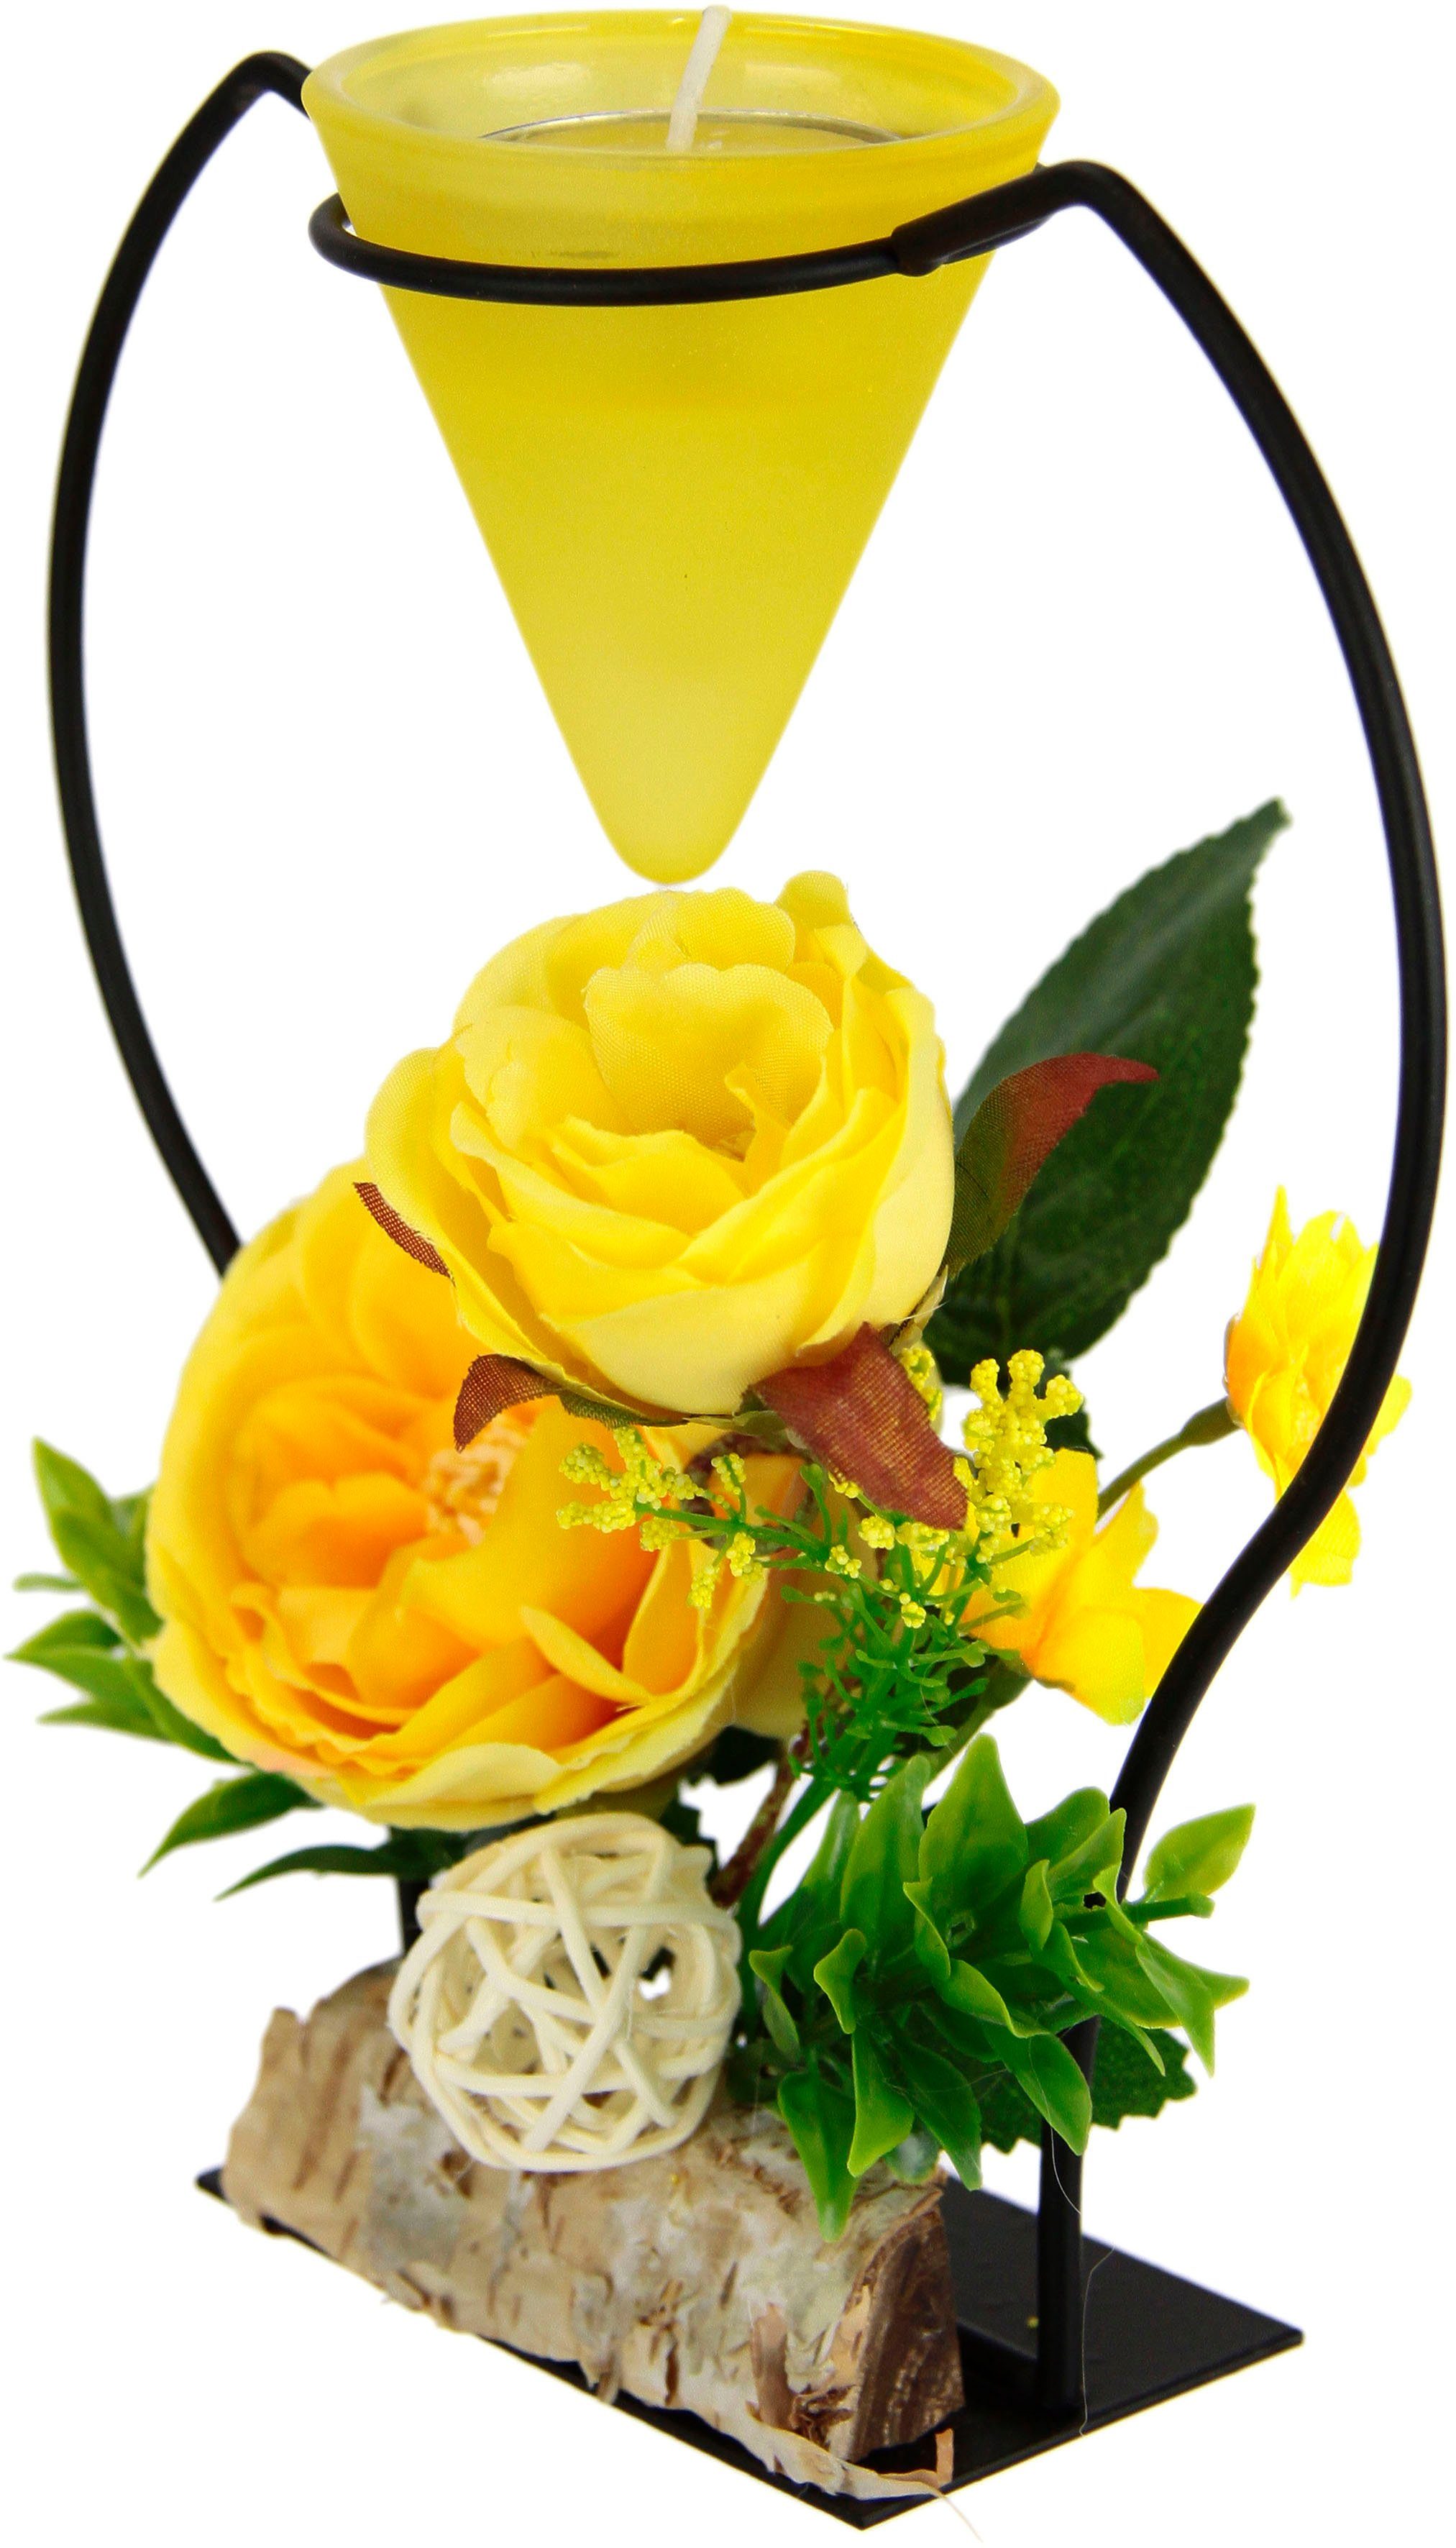 3D Advent gelb Teelichtkerze Rose, Kunstblumen I.GE.A. Metall Glaseinsatz Kerzenständer Teelichthalter